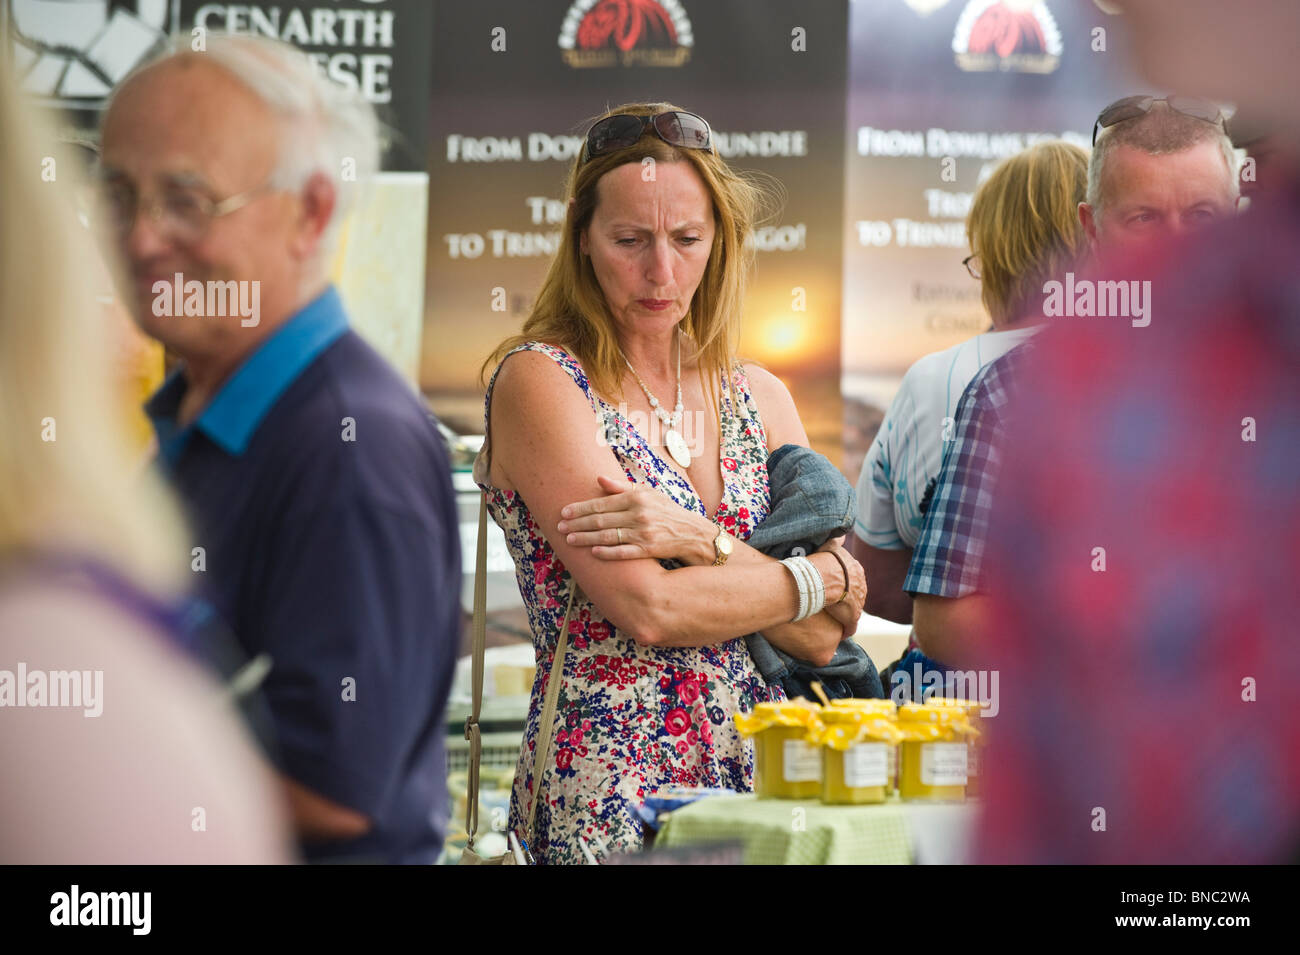 Personnes dégustant des échantillons de nourriture sur cale au Hay Festival alimentaire dans la place du marché à Hay-on-Wye Powys Pays de Galles UK Banque D'Images